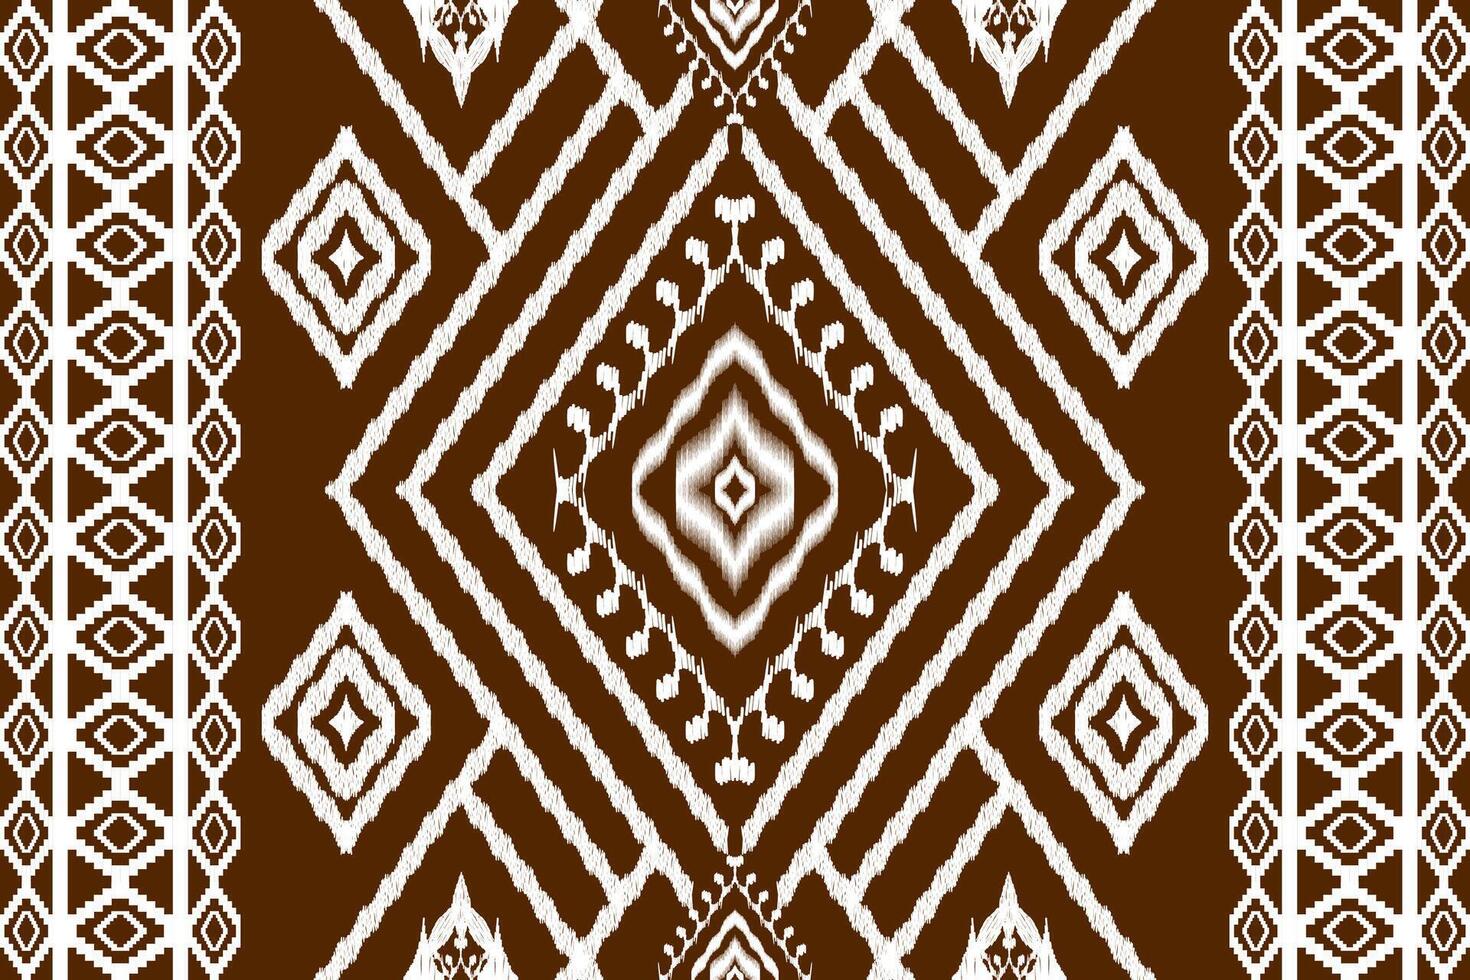 ethnique figure aztèque broderie style.géométrique ikat Oriental traditionnel art conception des motifs pour ethnique arrière-plan, papier peint, mode, vêtements, emballage, tissu, élément, sarong, graphique, vecteur illustration.